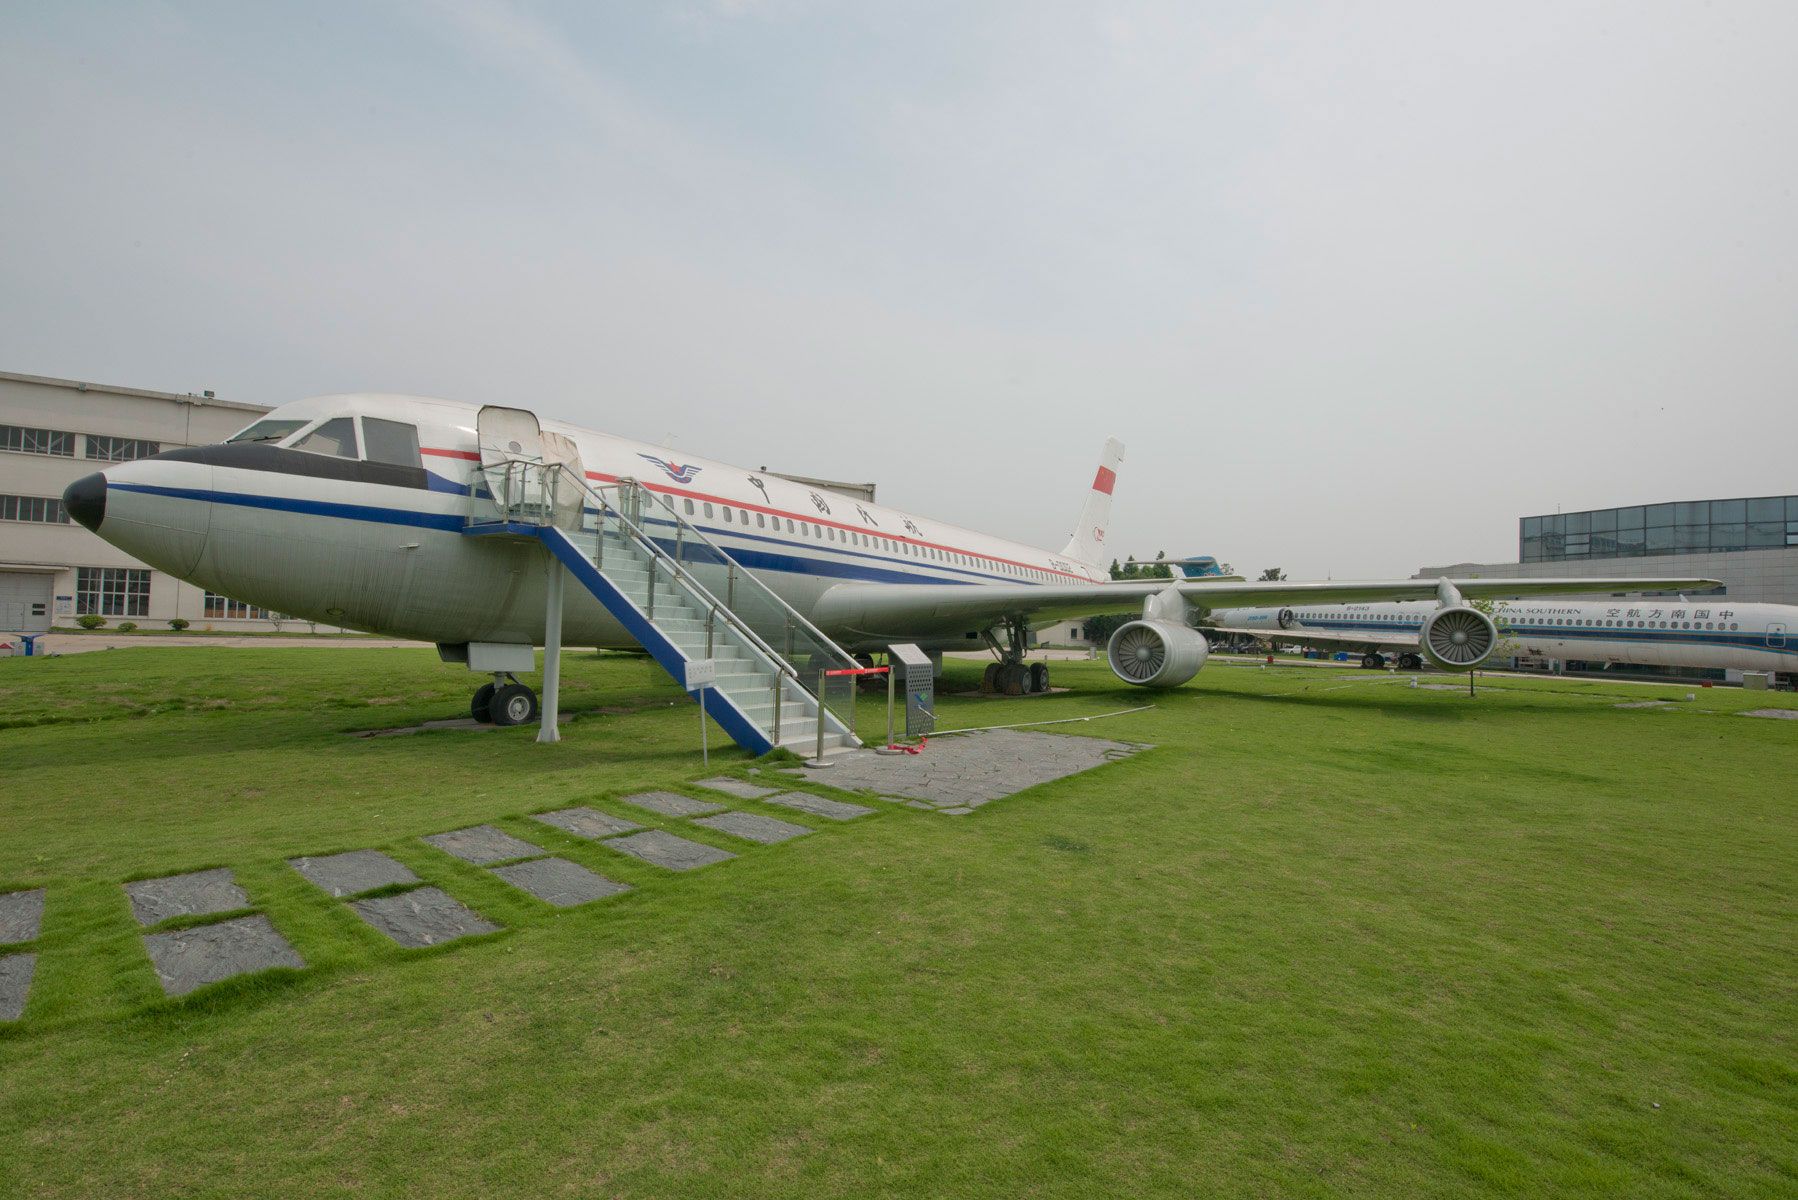 A Shanghai Y-10 on display.